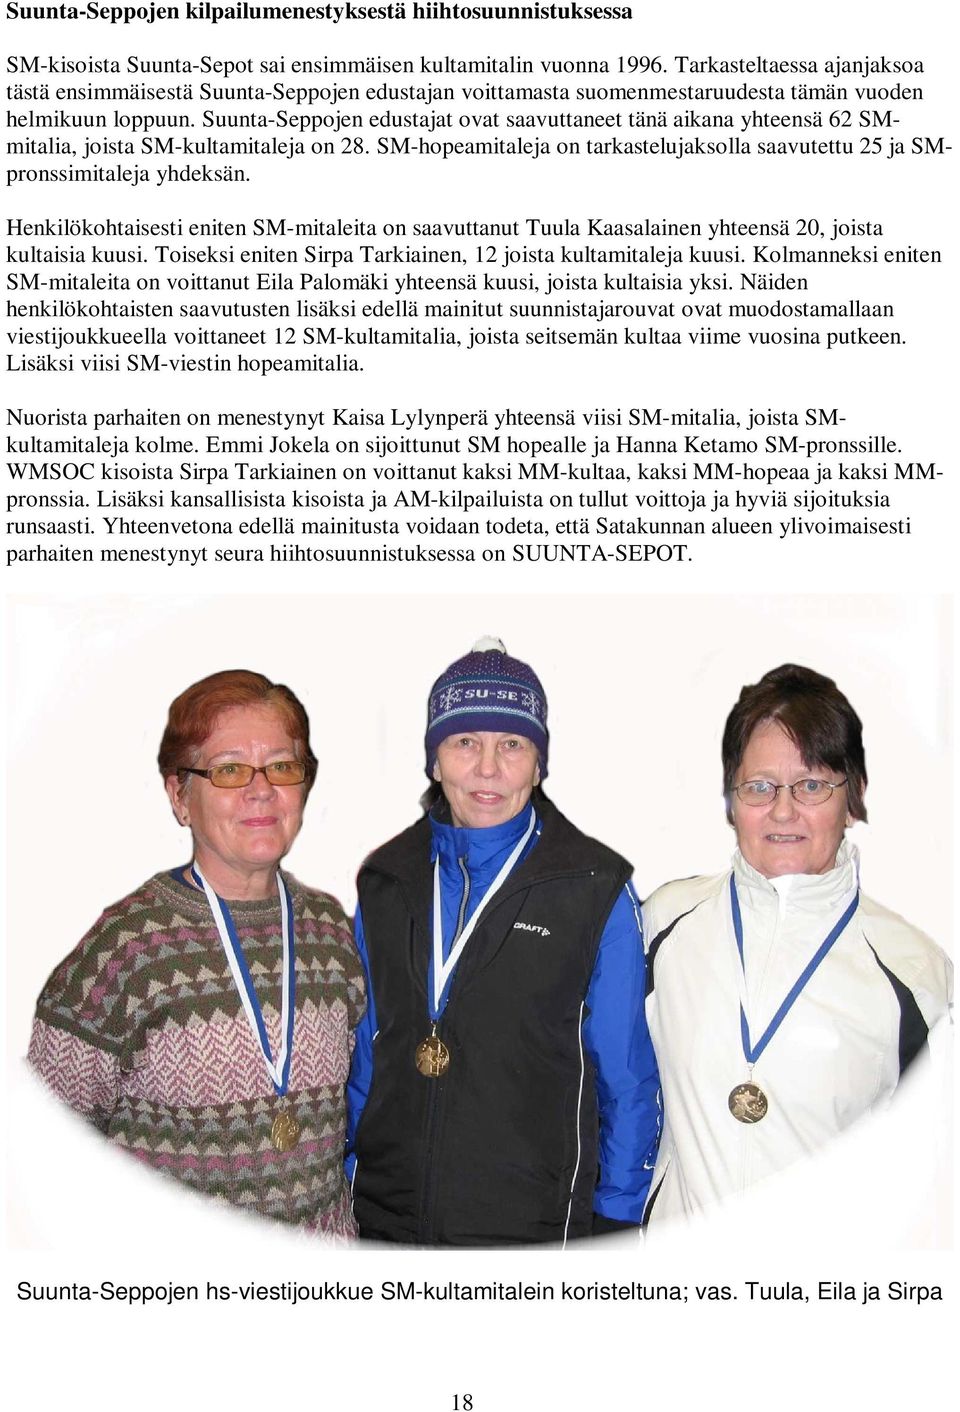 Suunta-Seppojen edustajat ovat saavuttaneet tänä aikana yhteensä 62 SMmitalia, joista SM-kultamitaleja on 28. SM-hopeamitaleja on tarkastelujaksolla saavutettu 25 ja SMpronssimitaleja yhdeksän.